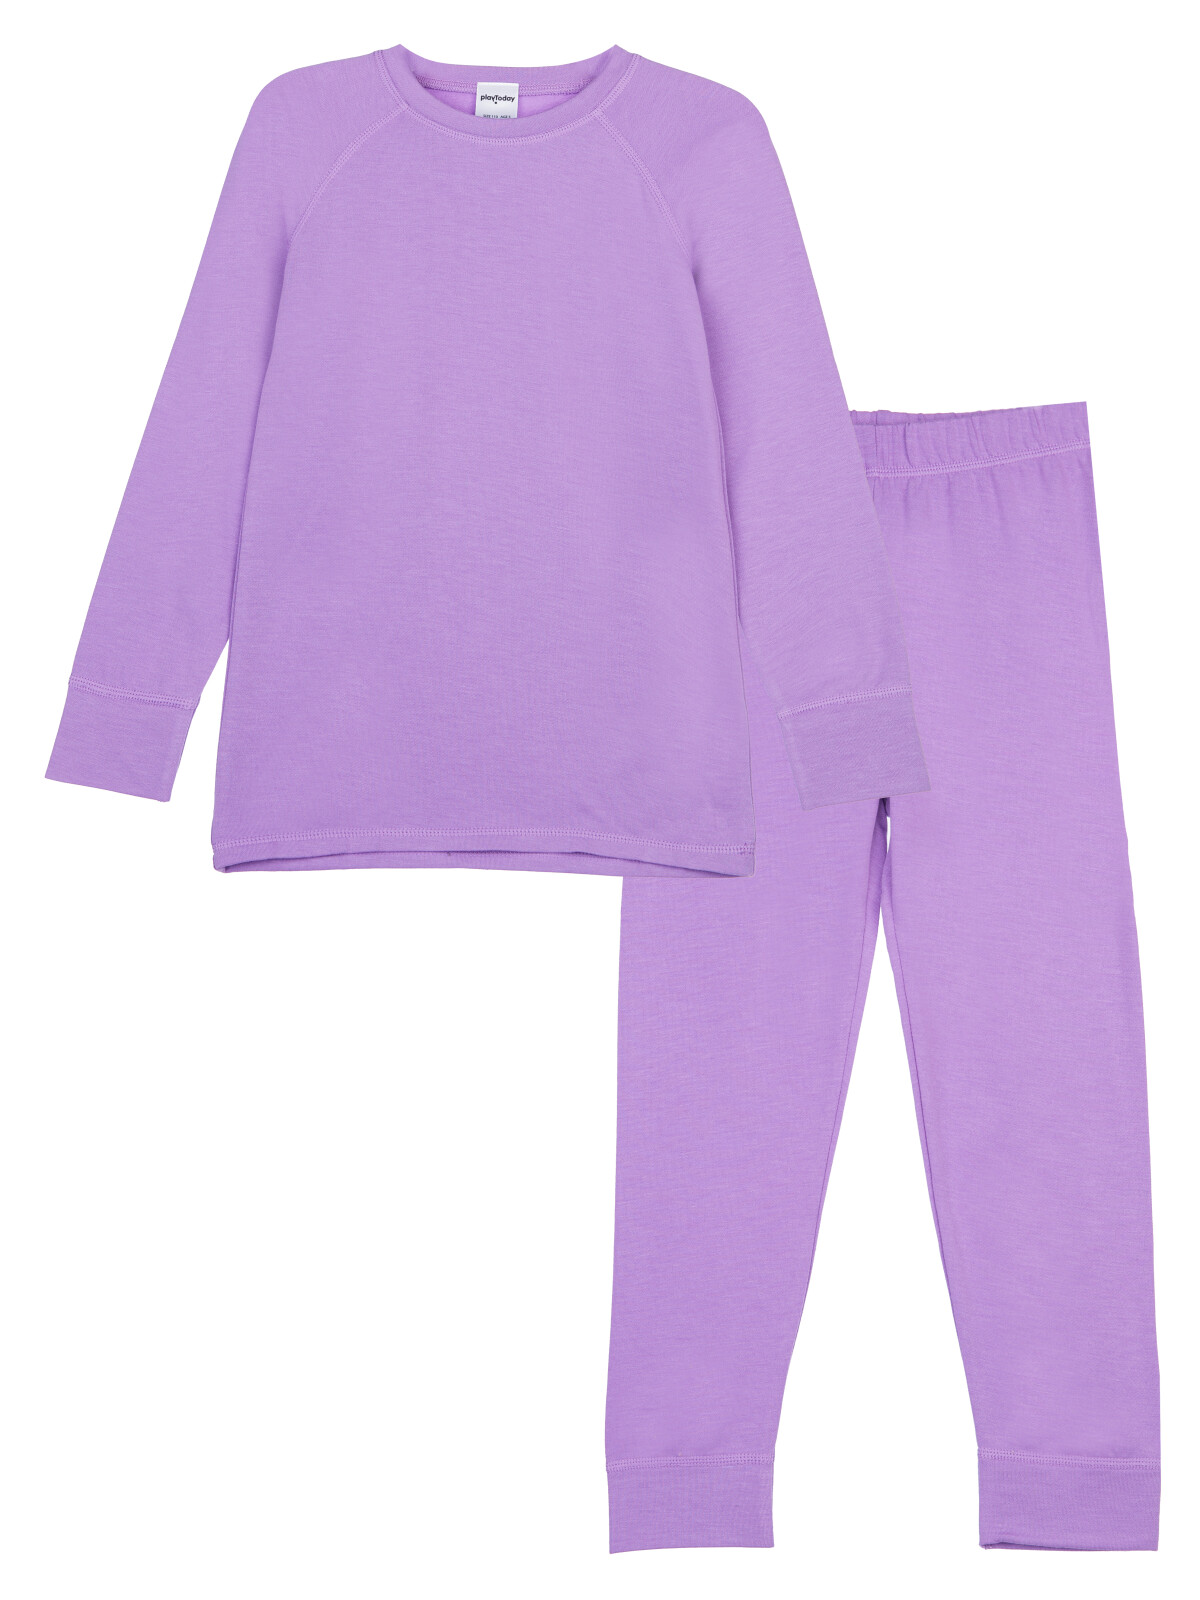 Термокомплект для девочек PlayToday: брюки, толстовка, фиолетовый, 110